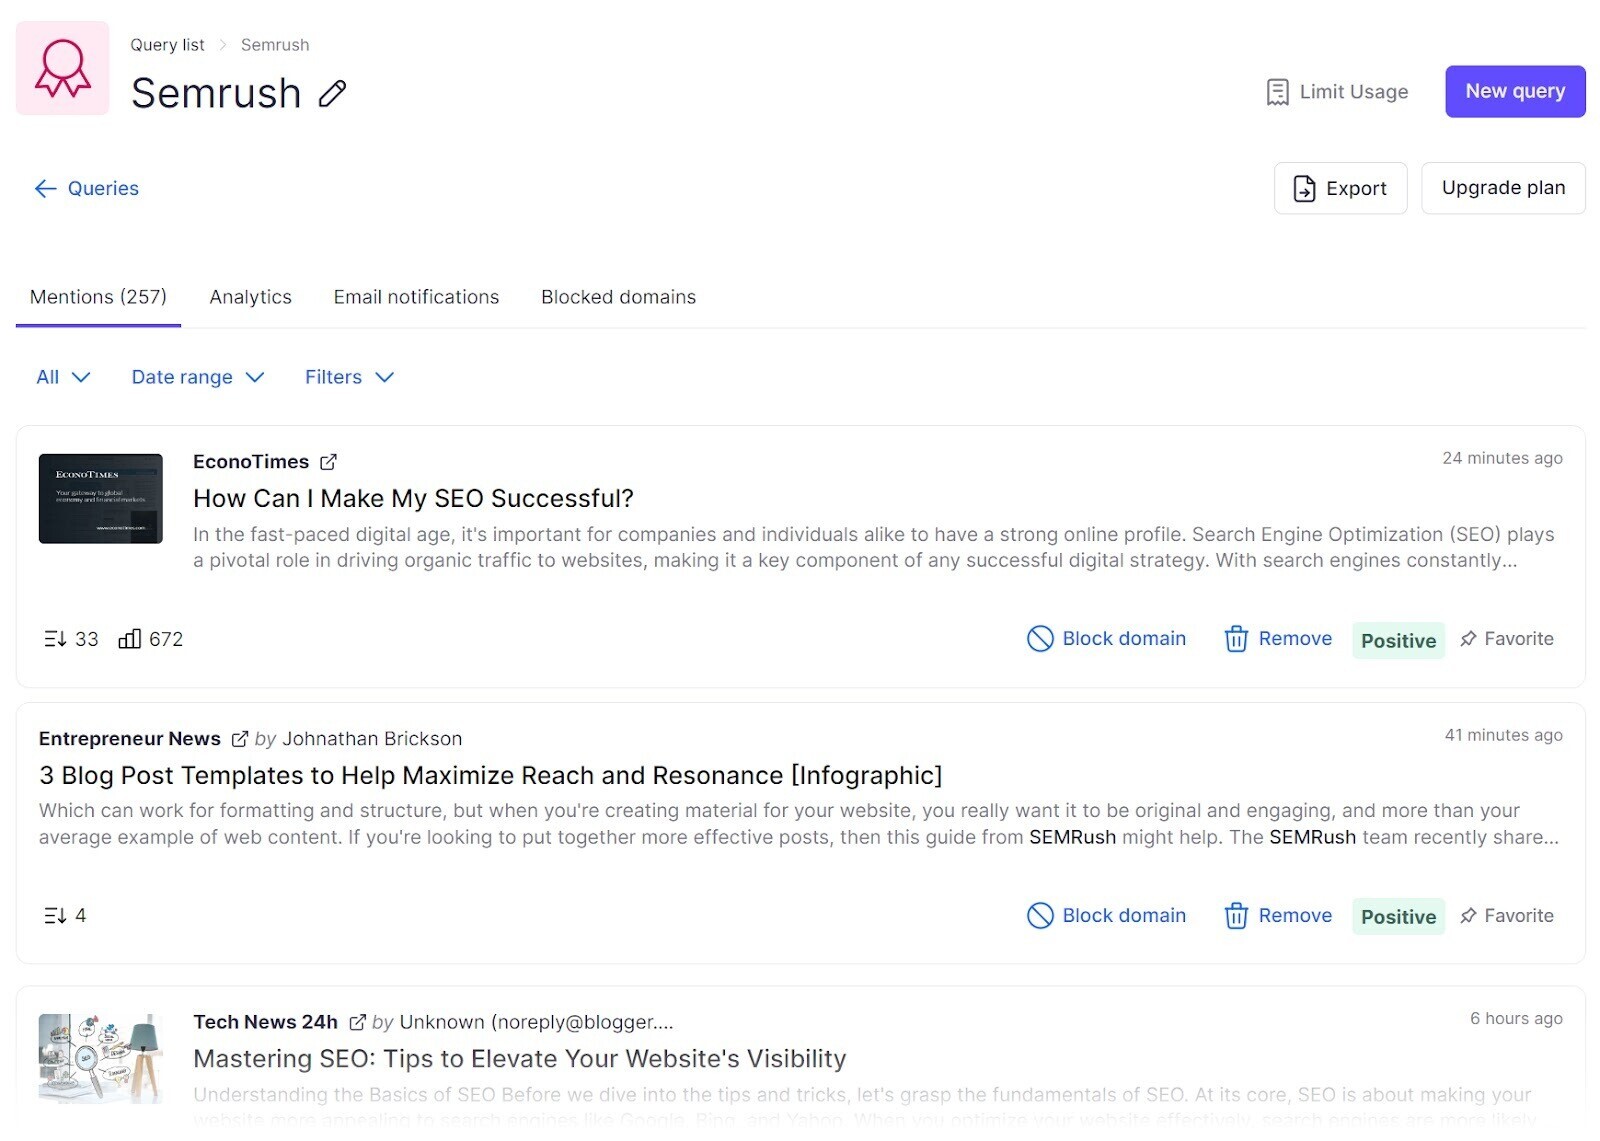 Brand Monitoring app dashboard for "Semrush"